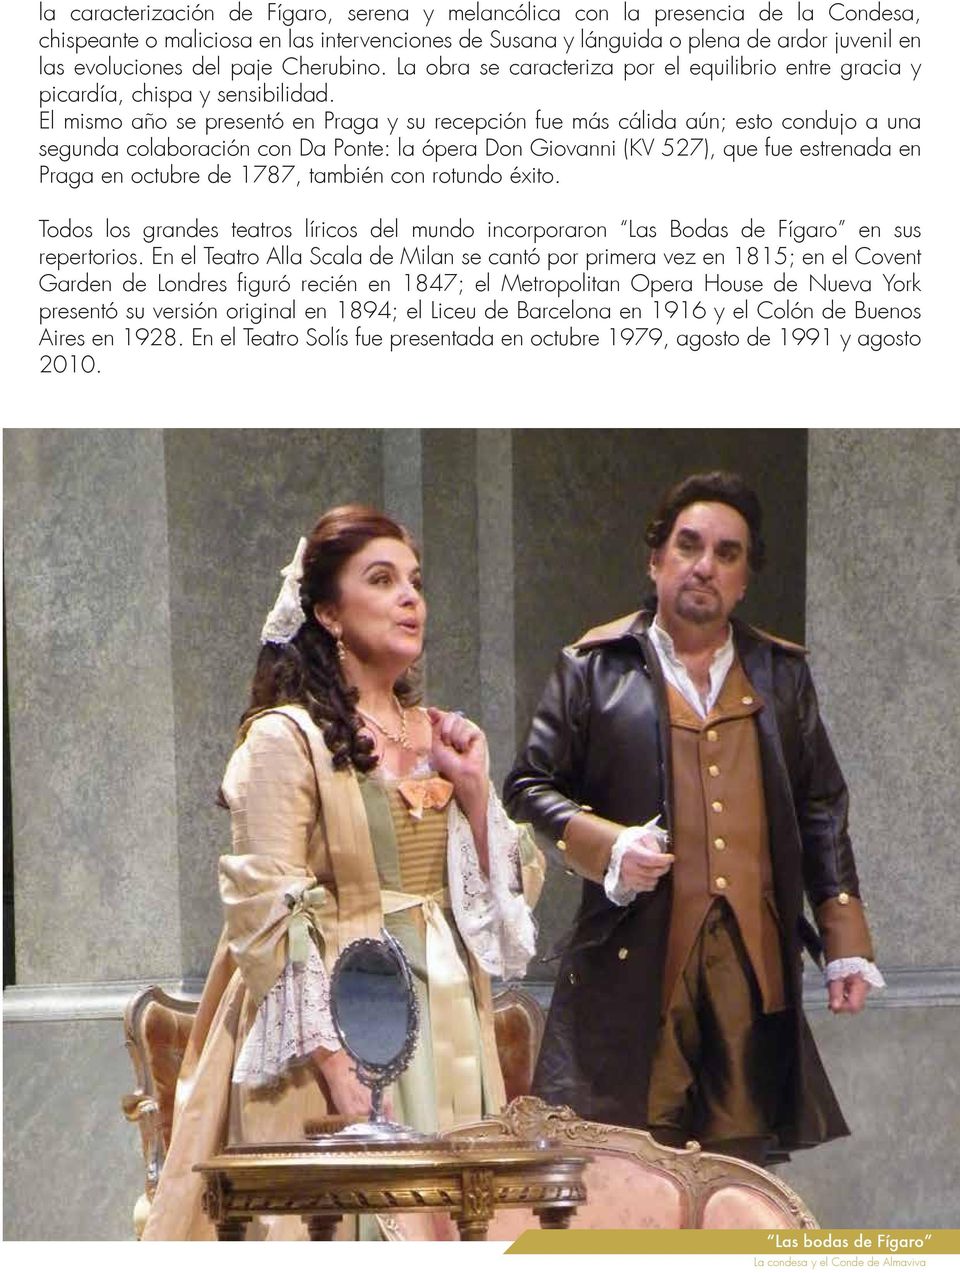 El mismo año se presentó en Praga y su recepción fue más cálida aún; esto condujo a una segunda colaboración con Da Ponte: la ópera Don Giovanni (KV 527), que fue estrenada en Praga en octubre de